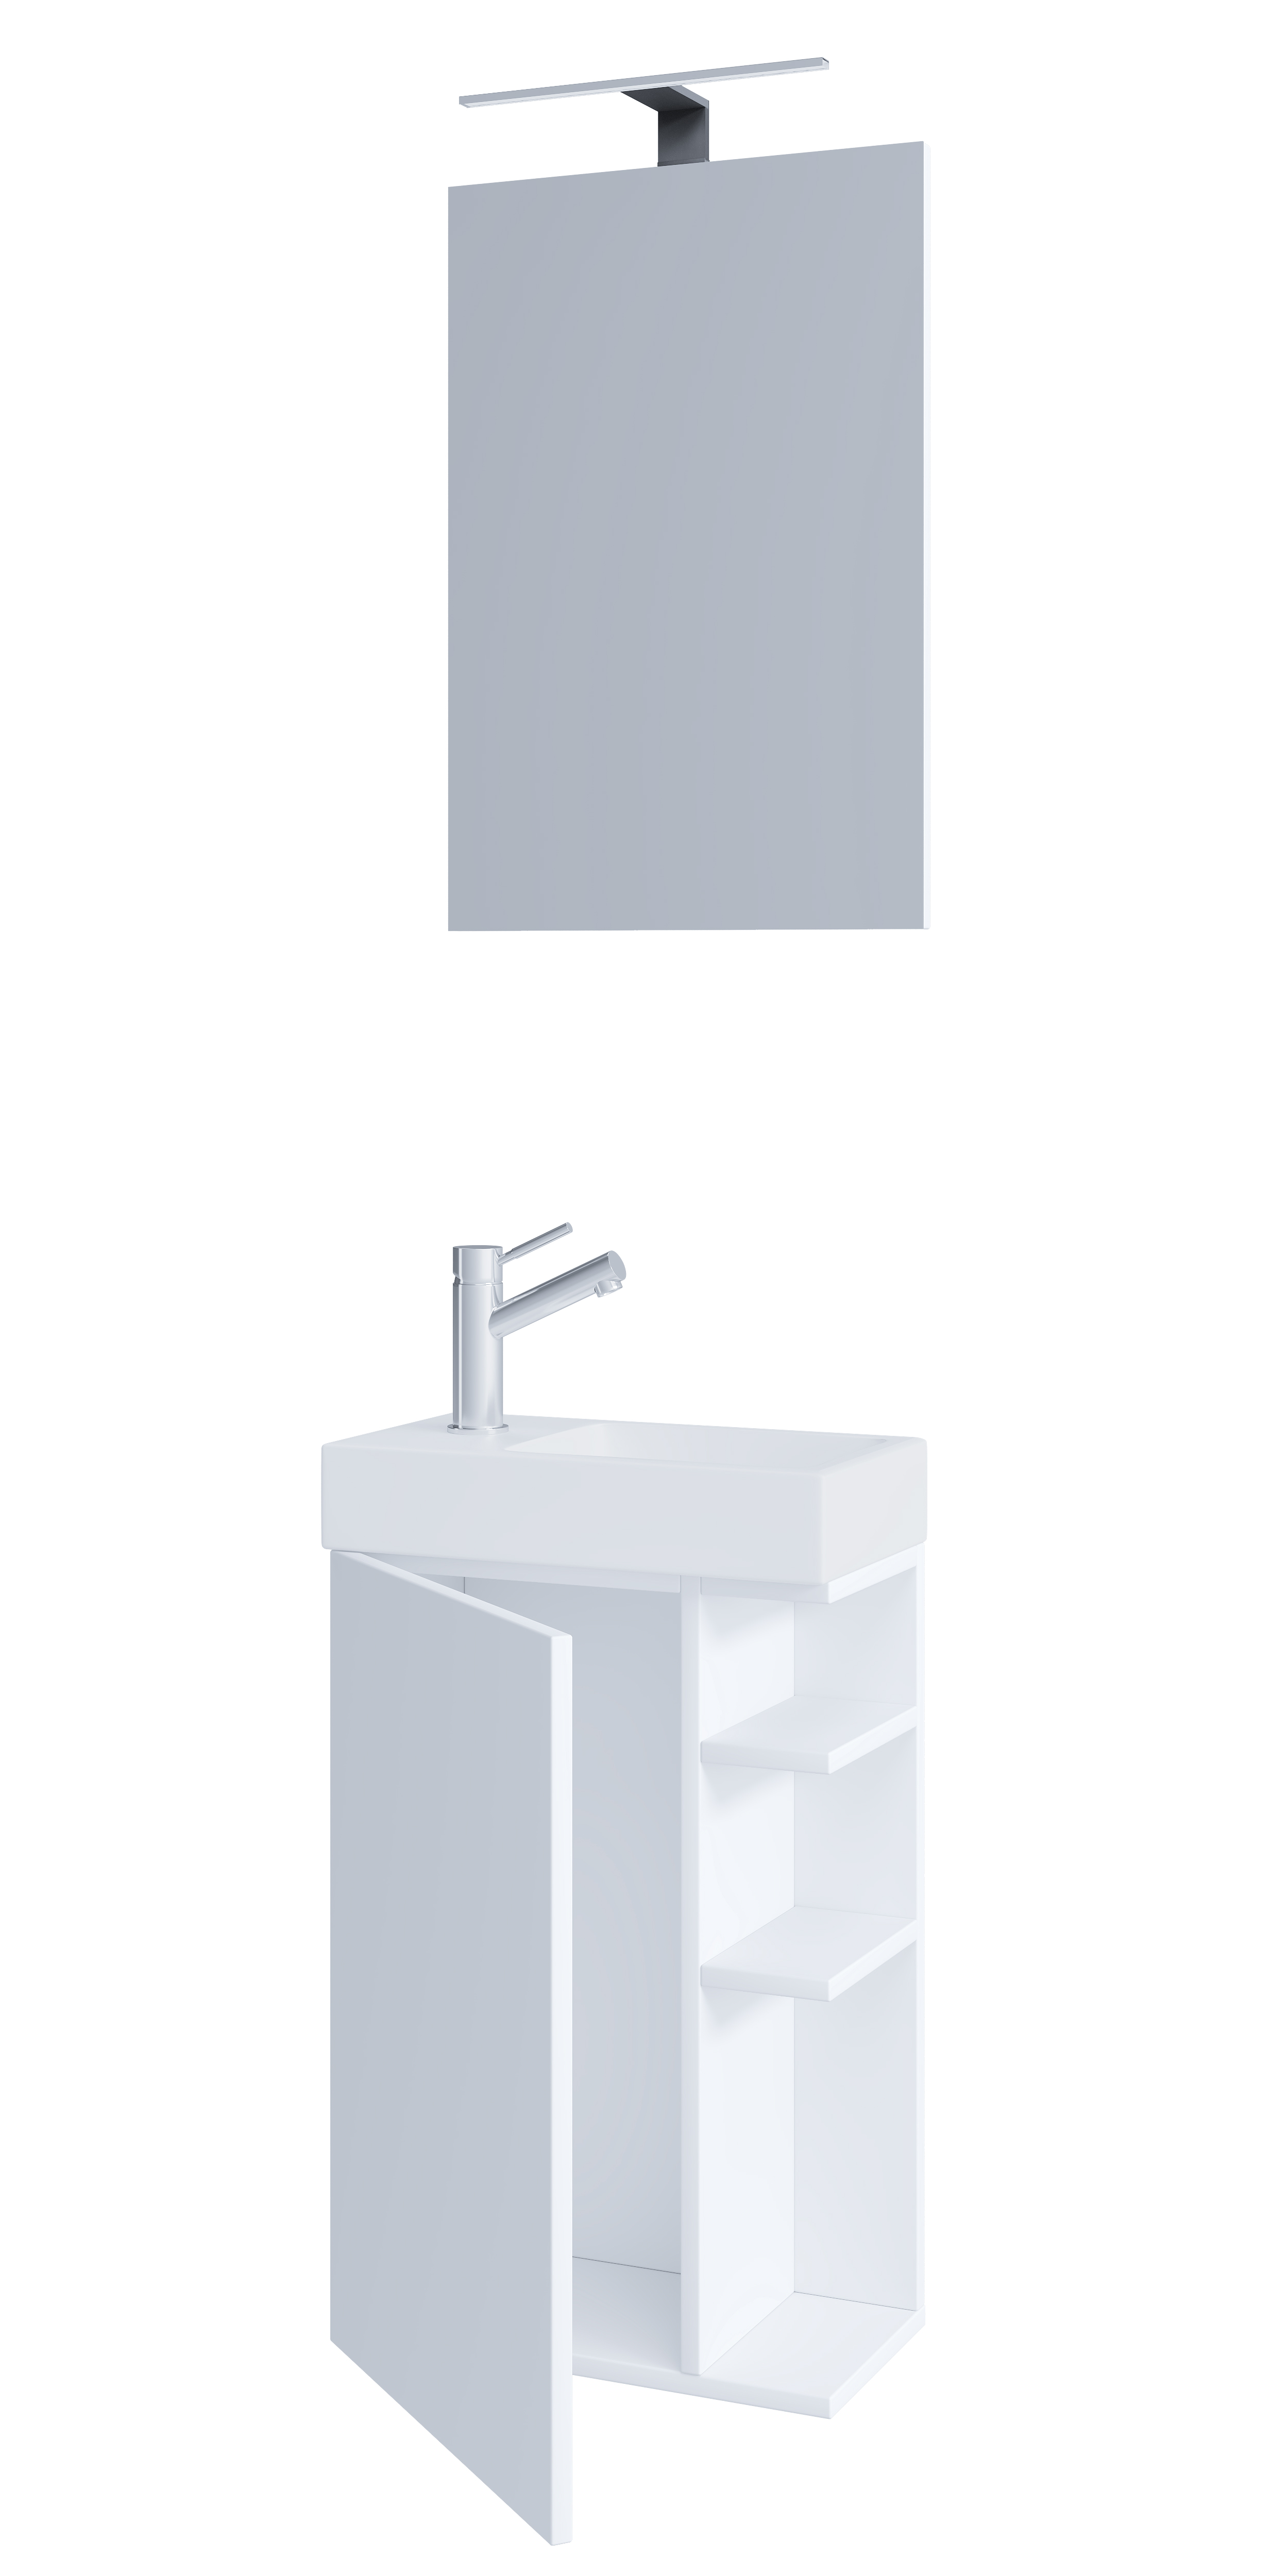 Billede af VCM NORDIC Lumia 3-delt gæstevaskeplads, m. spejl, håndvask, 1 låge, 2 hylder - keramik og hvid træ